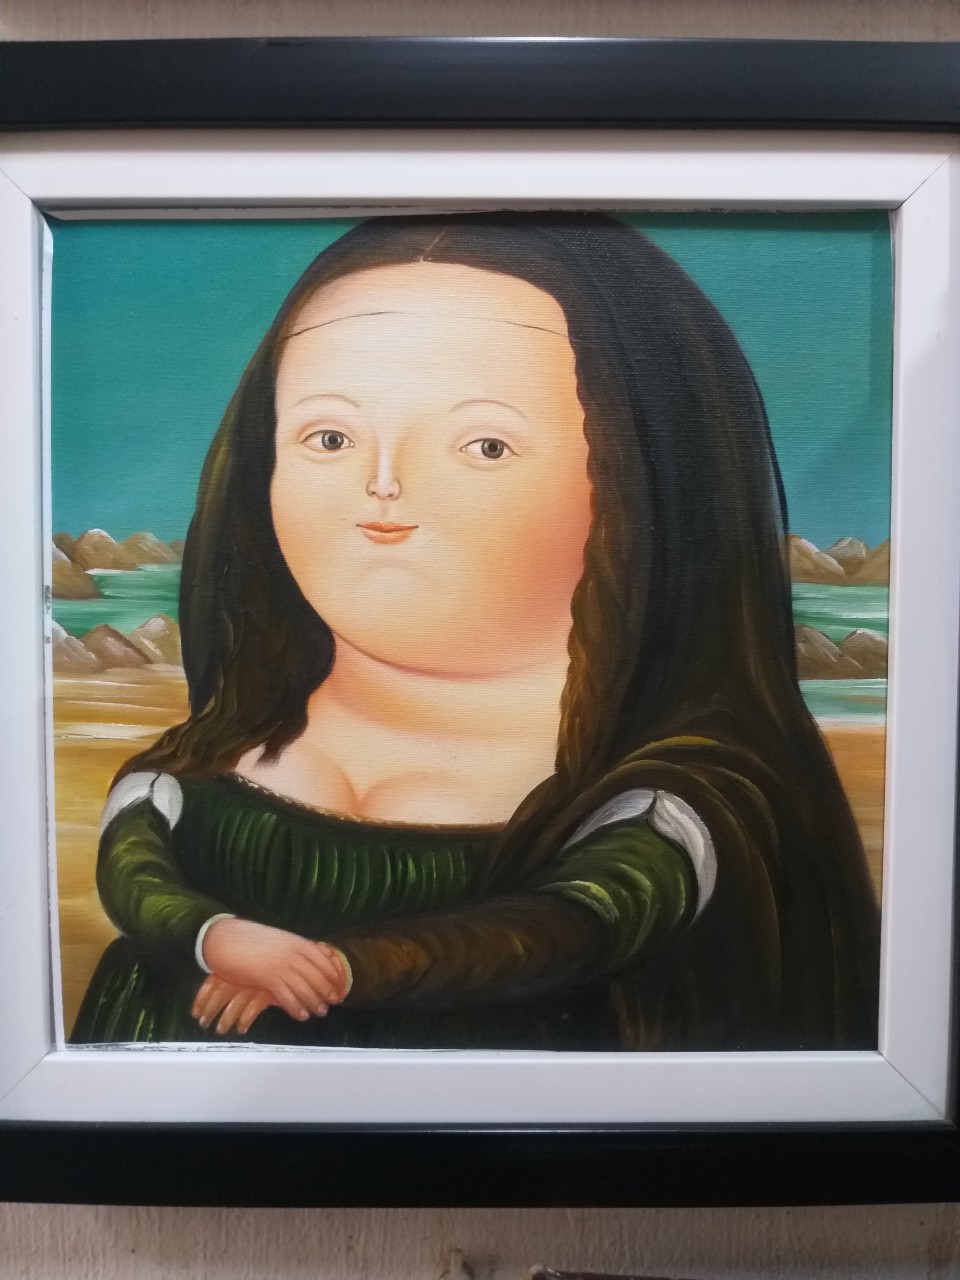 Nàng Mona Lisa của danh họa Mai Trung Thứ sắp được đấu giá tại Hồng Kông   Báo Quảng Ninh điện tử